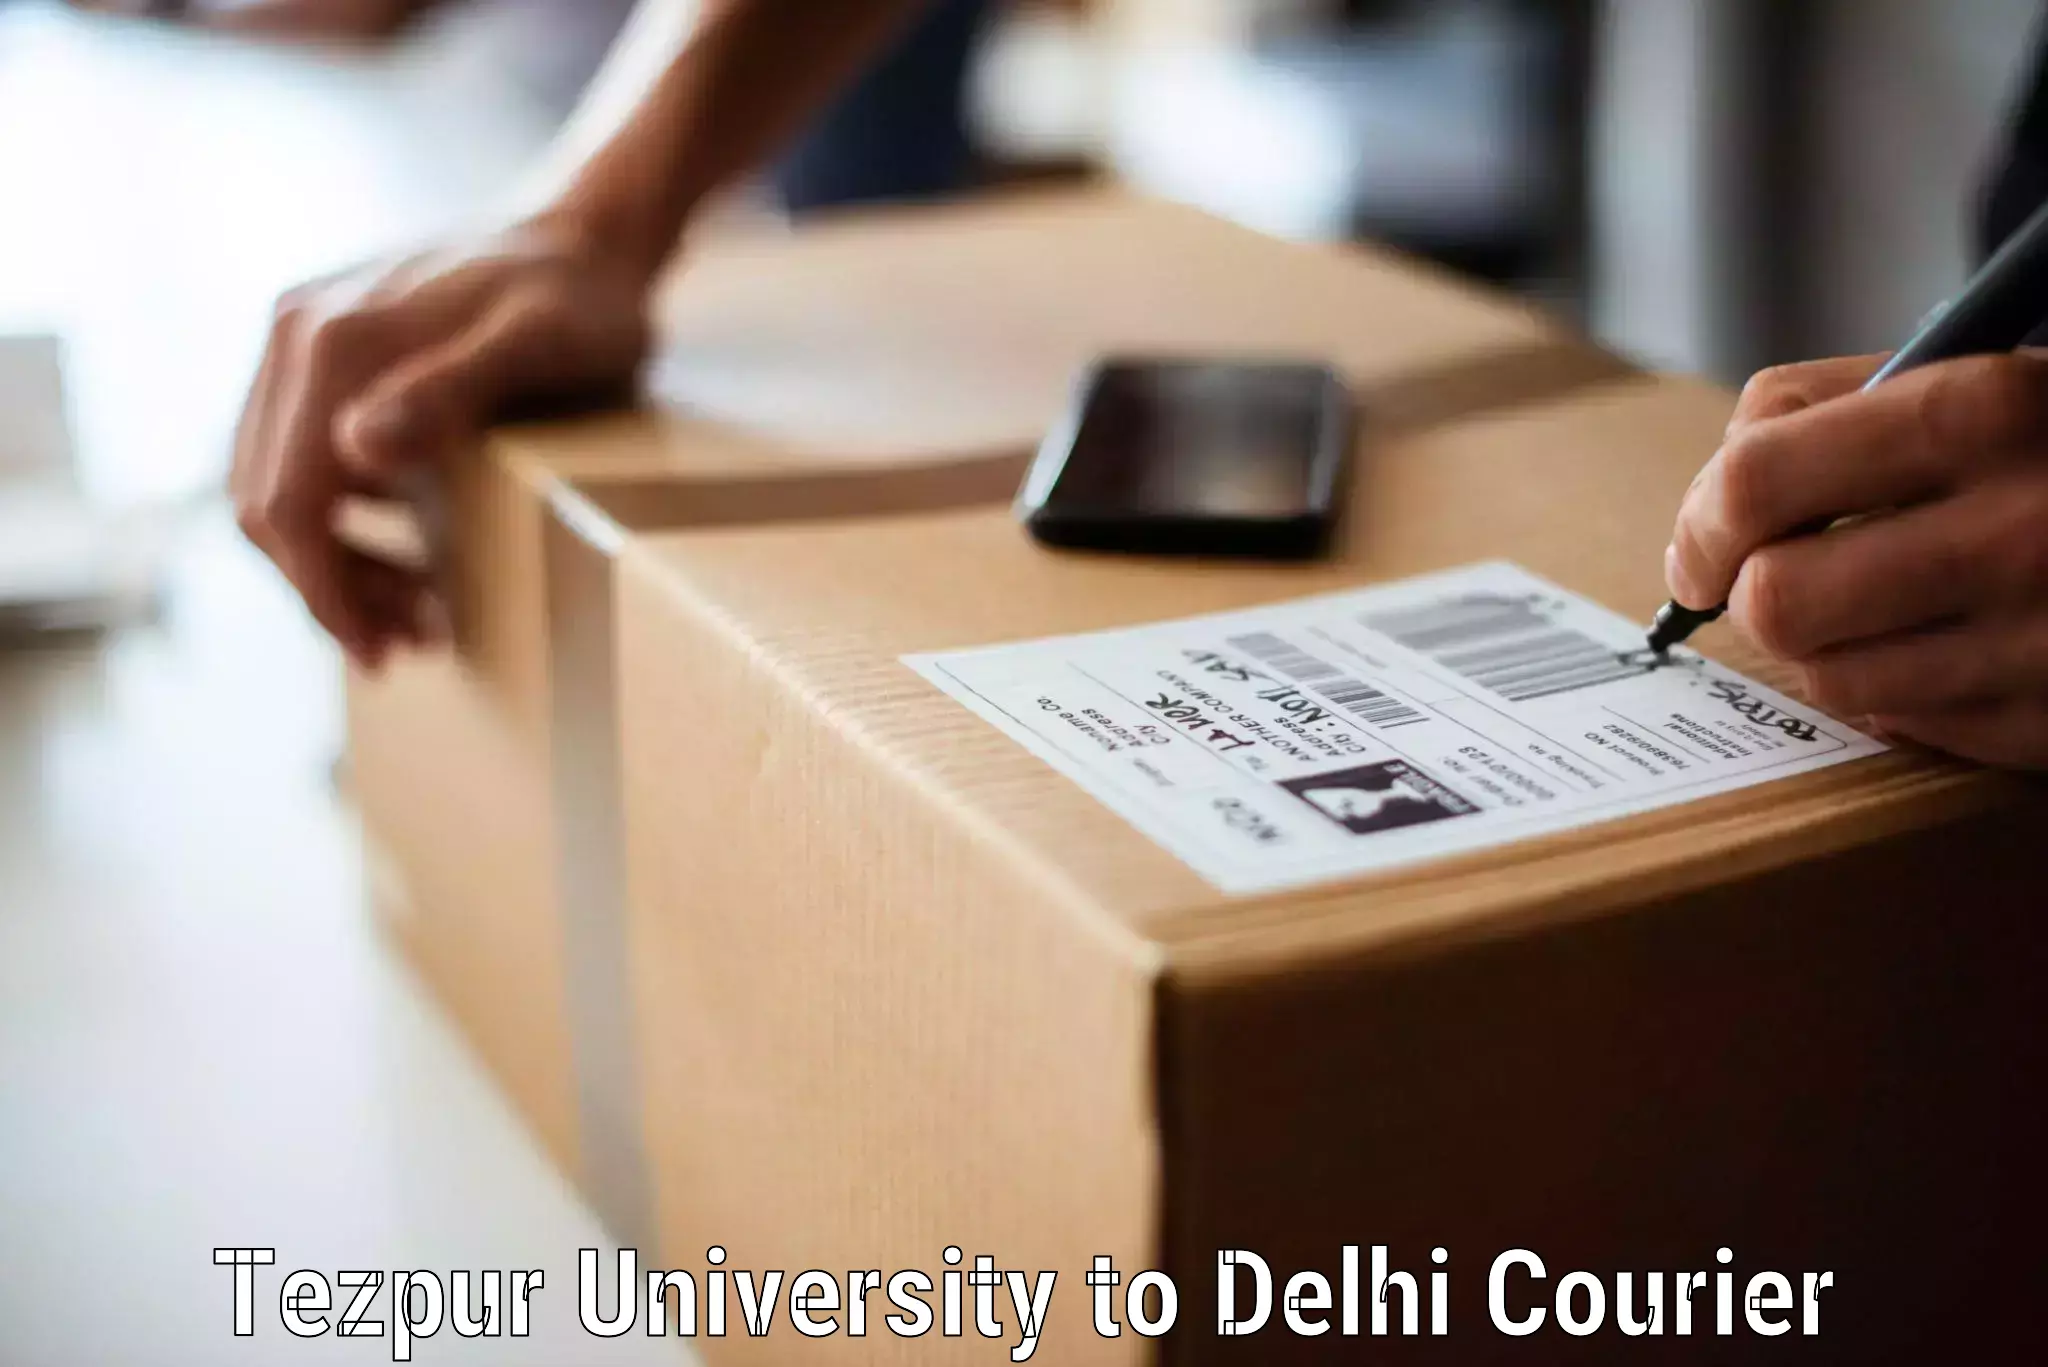 Furniture delivery service Tezpur University to Ashok Vihar